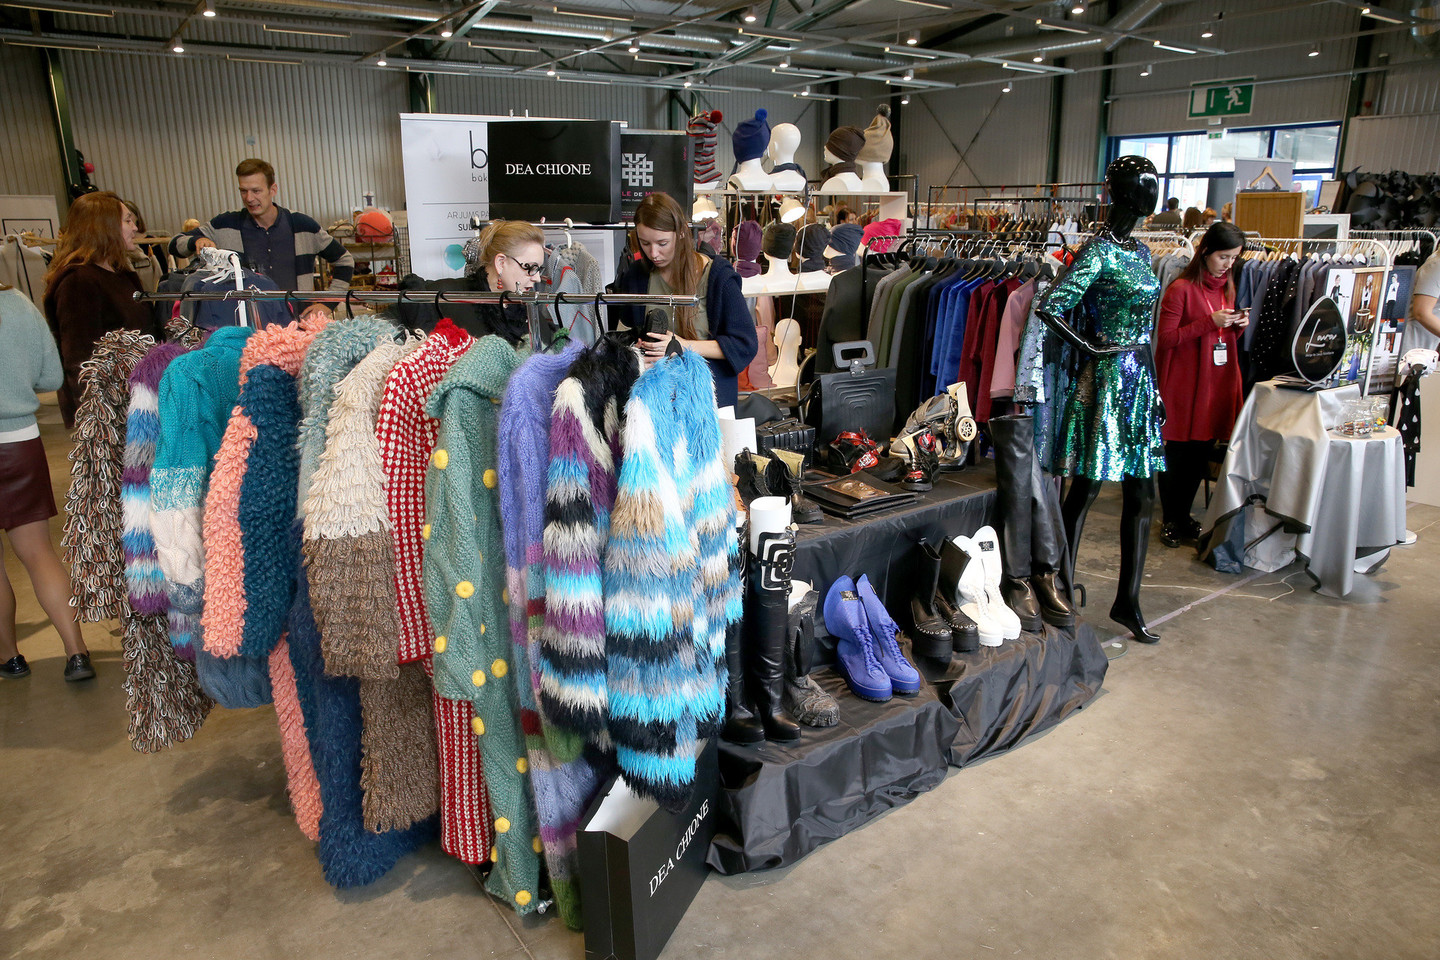 Garsūs Lietuvos žmonės savo kūrinius pristatė didžiausioje mados mugėje „Fashion bazaar“.<br>R.Danisevičiaus nuotr.